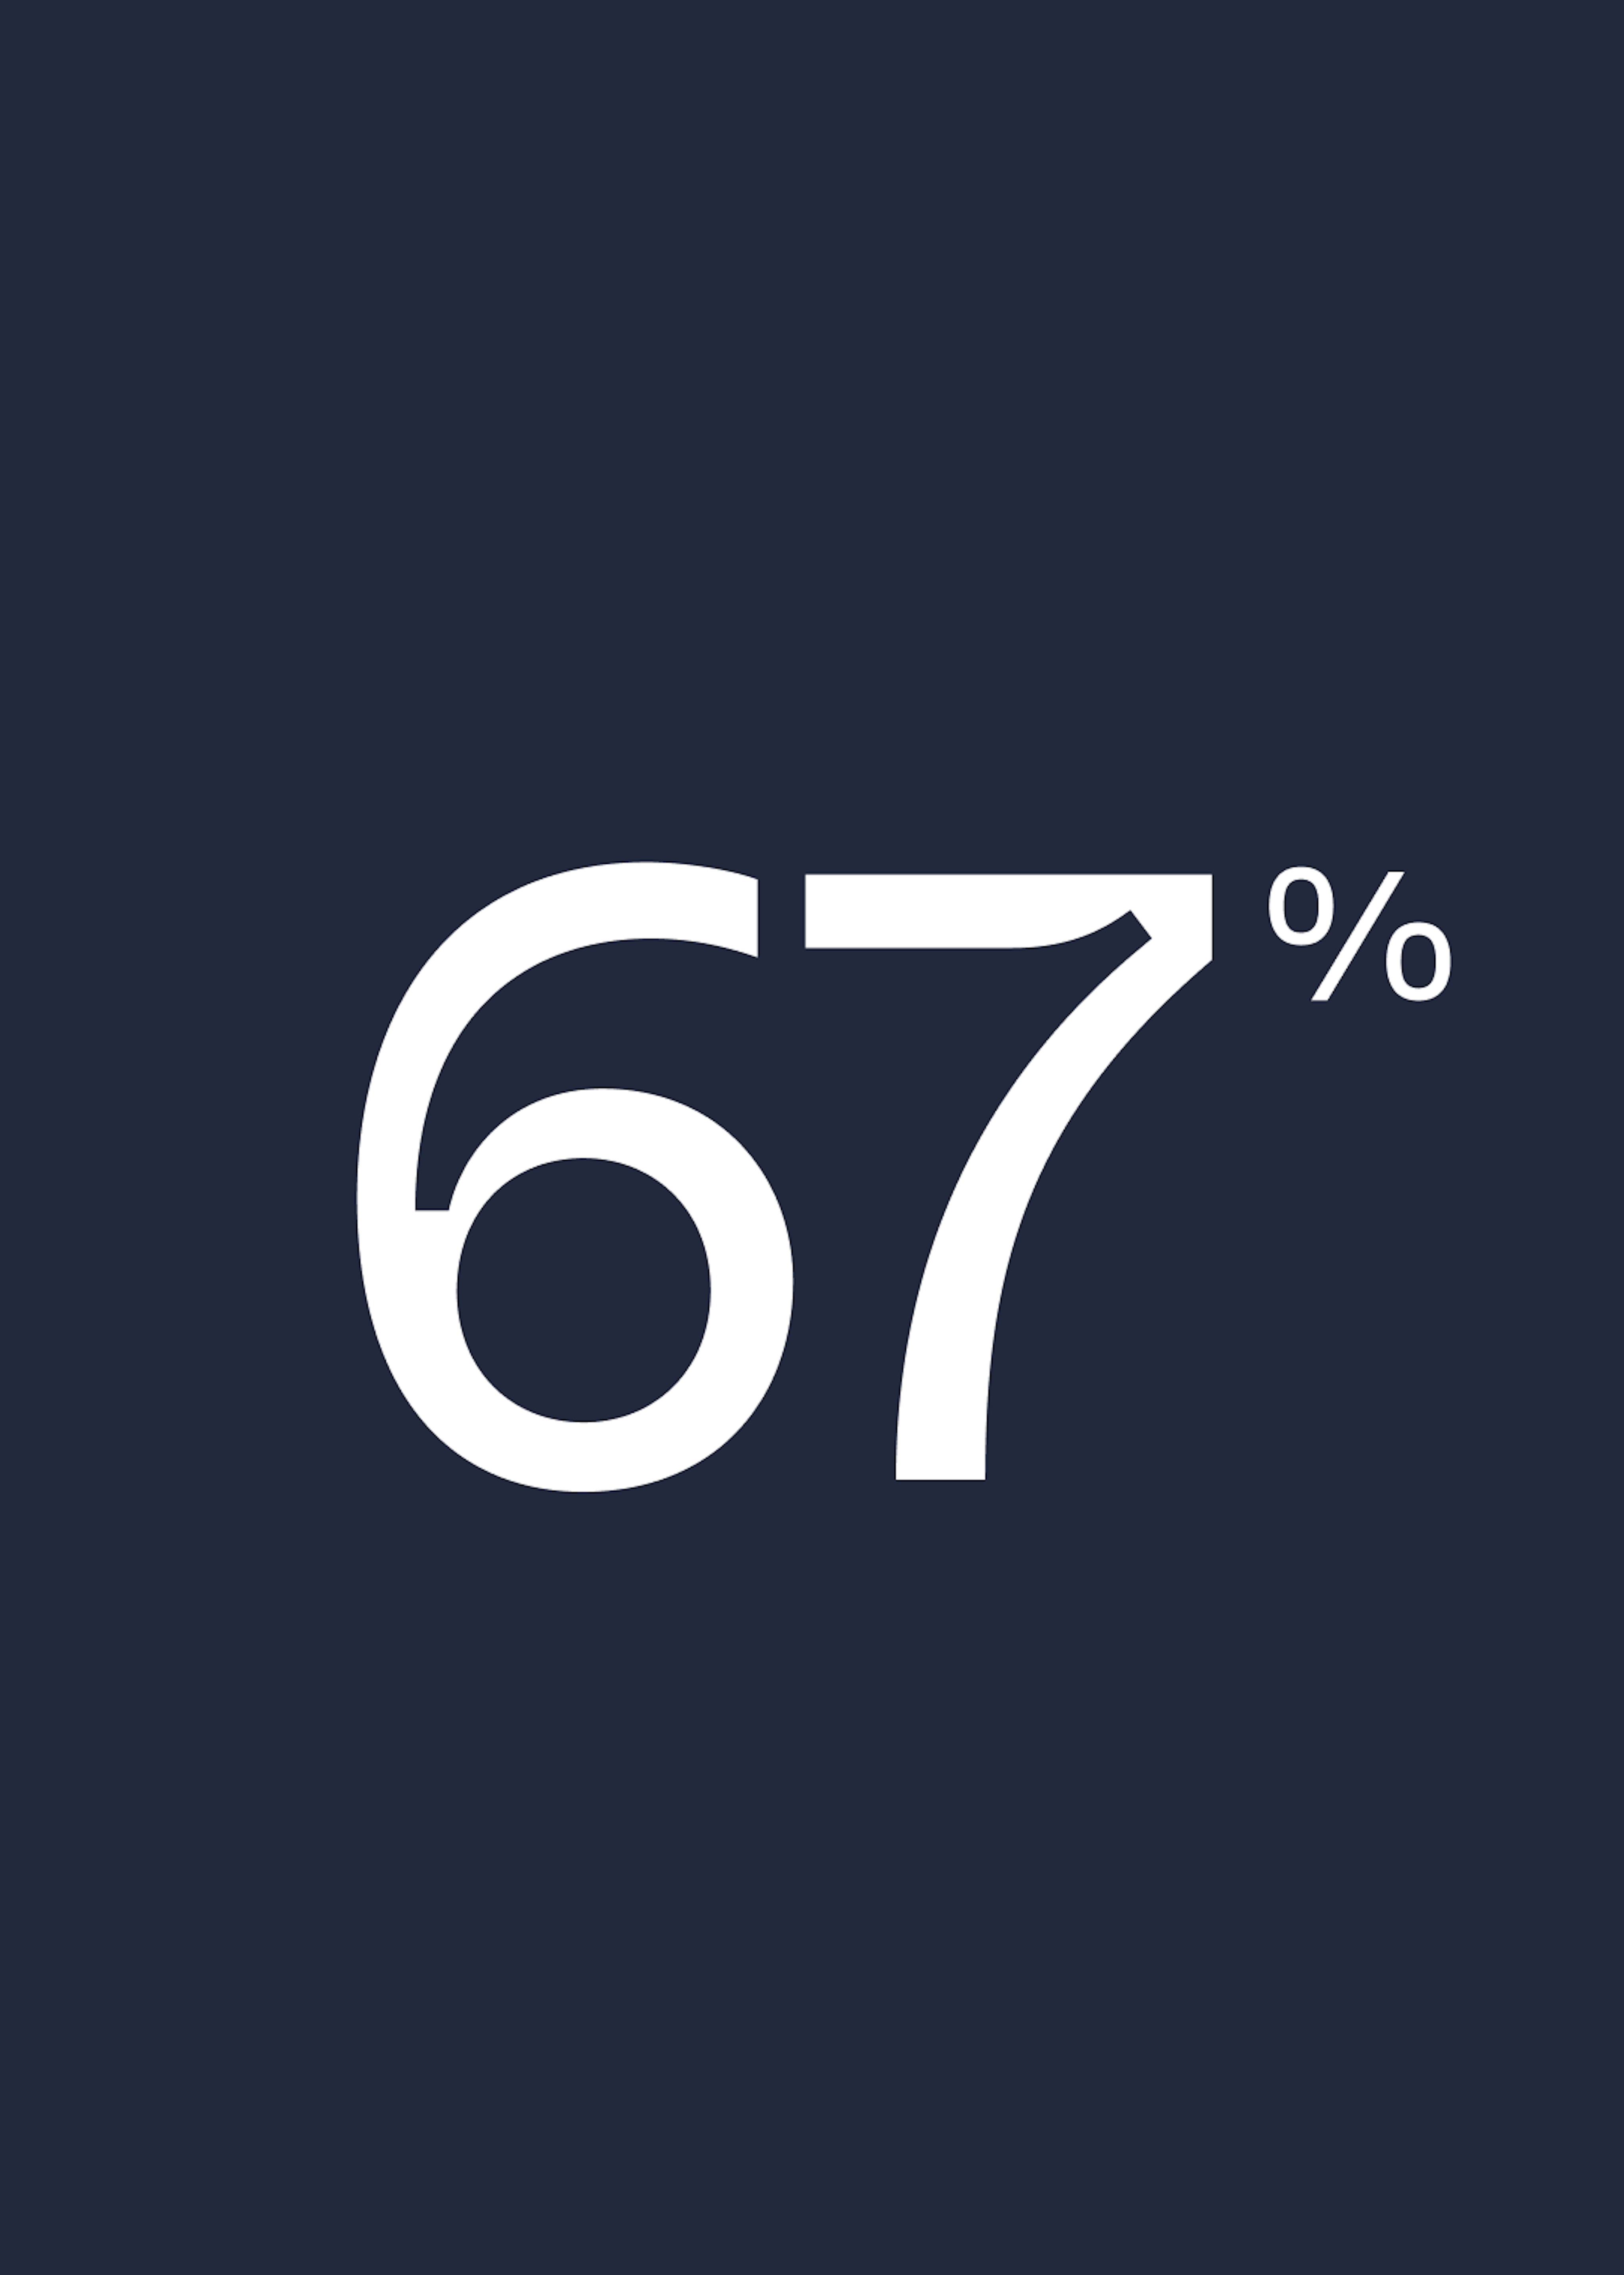 67% Verantwortung Mammut.com